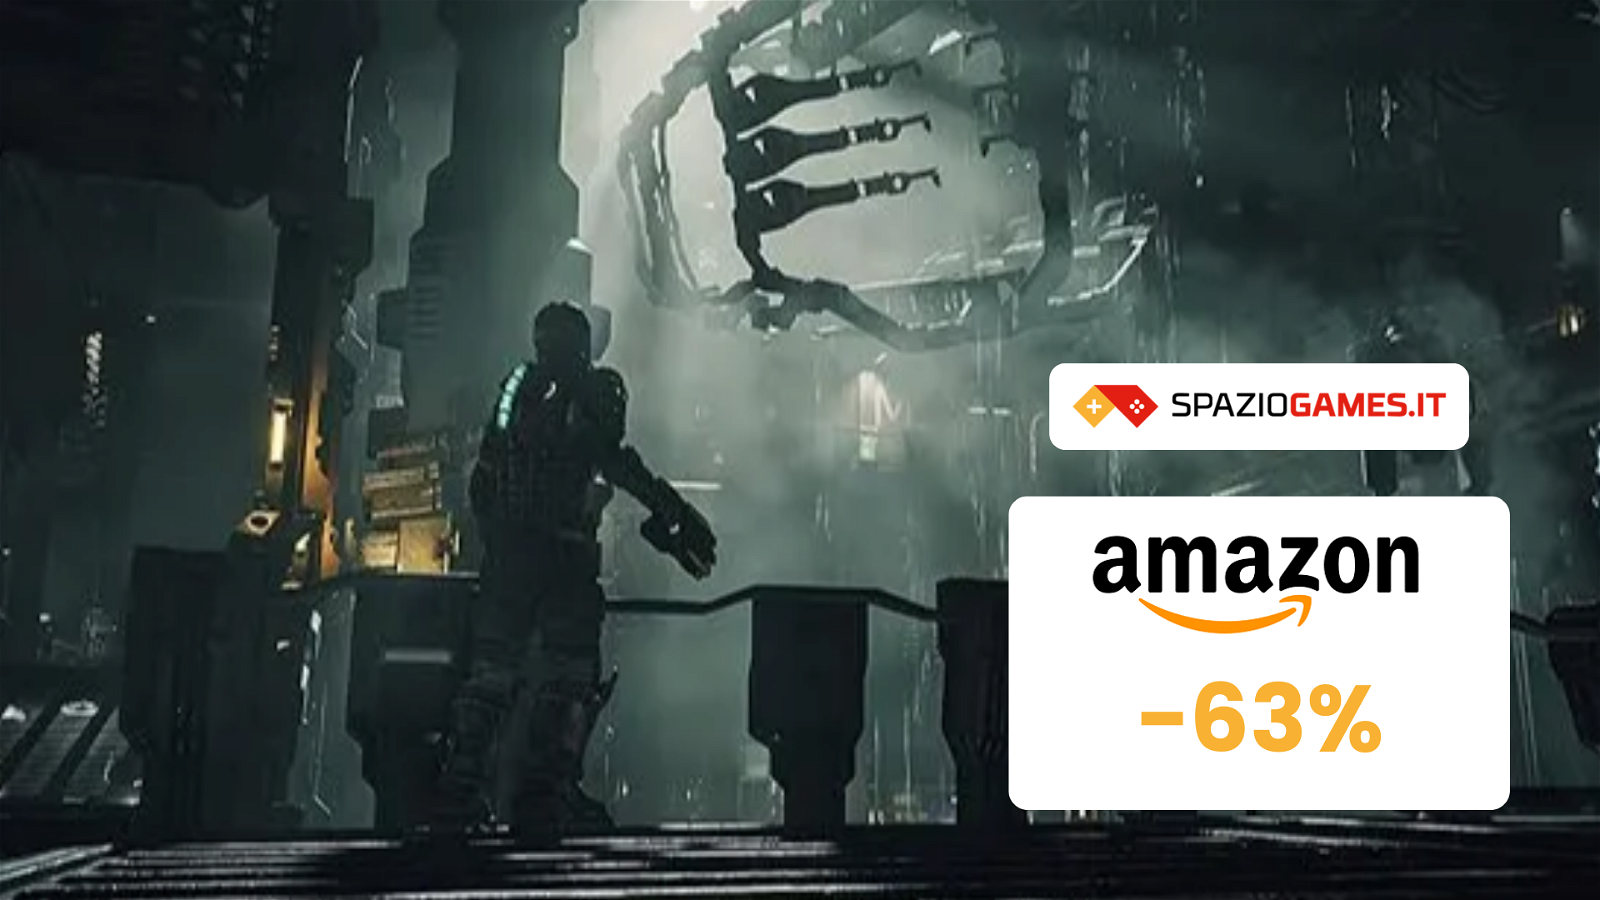 Dead Space per PS5 a 30€: un horror fantascientifico da non perdere!